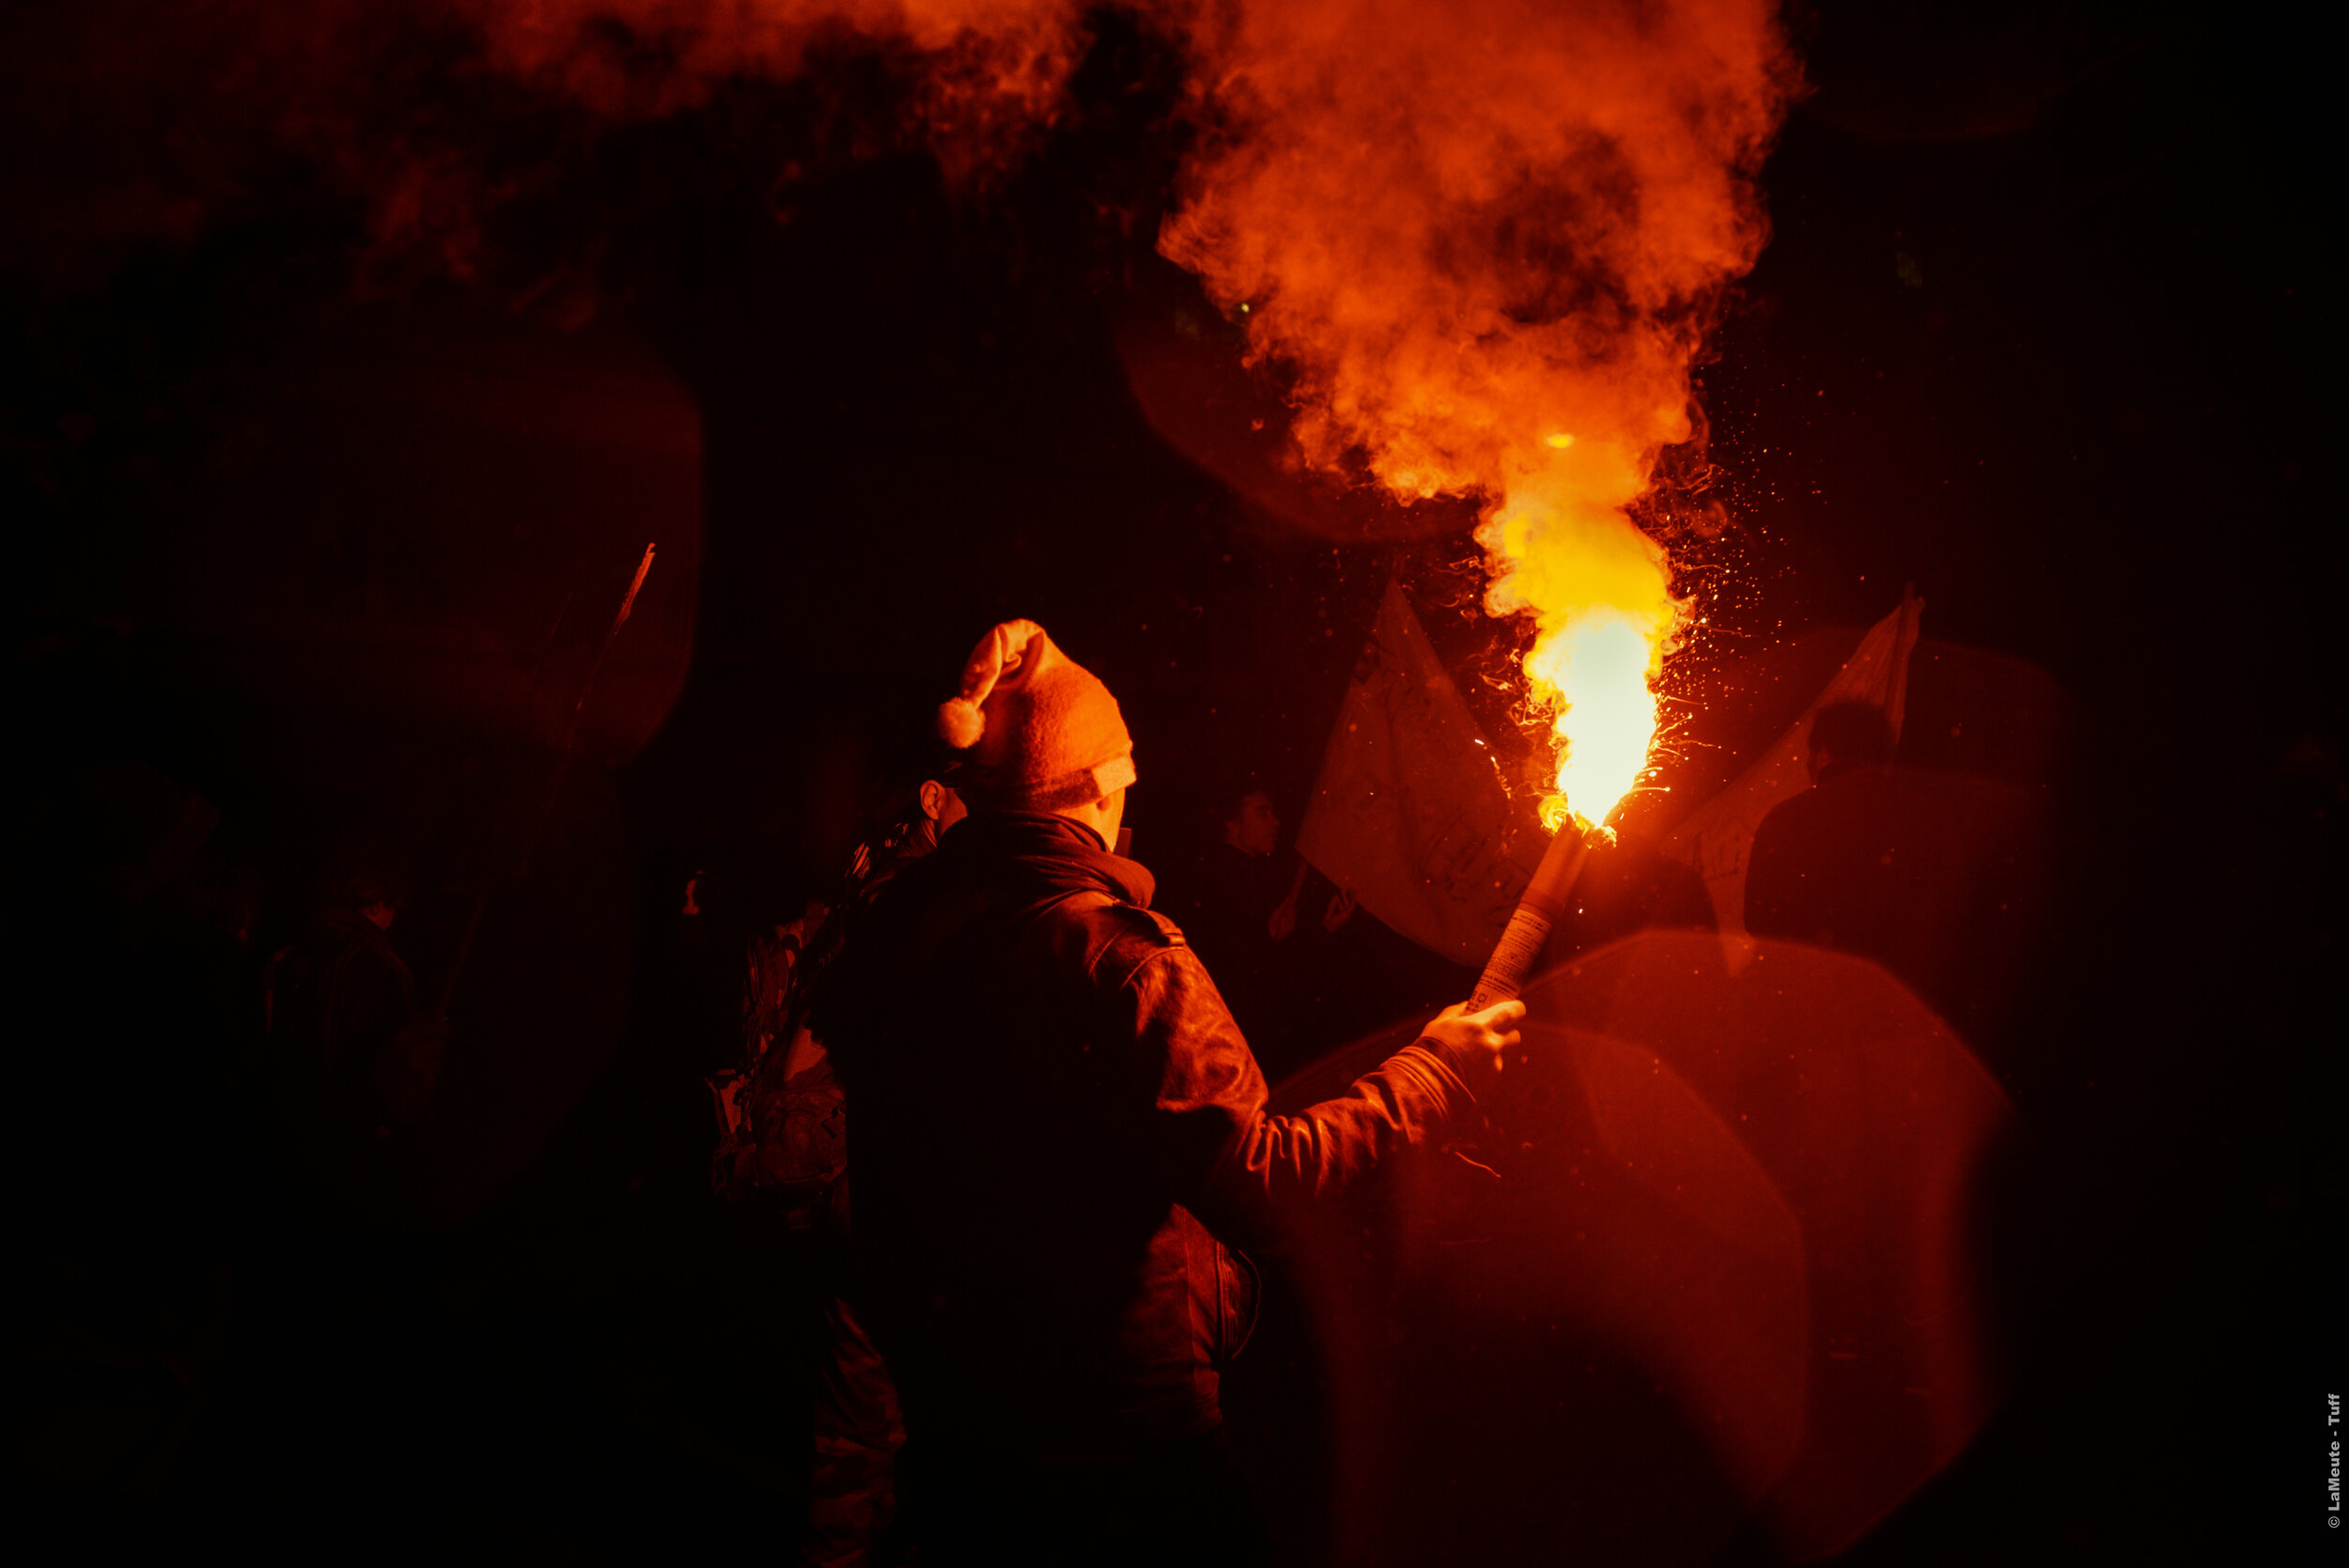  Les dernier.ère.s manifestant.e.s arrivent à Nation, l'un allume sa torche. © LaMeute - Tuff 